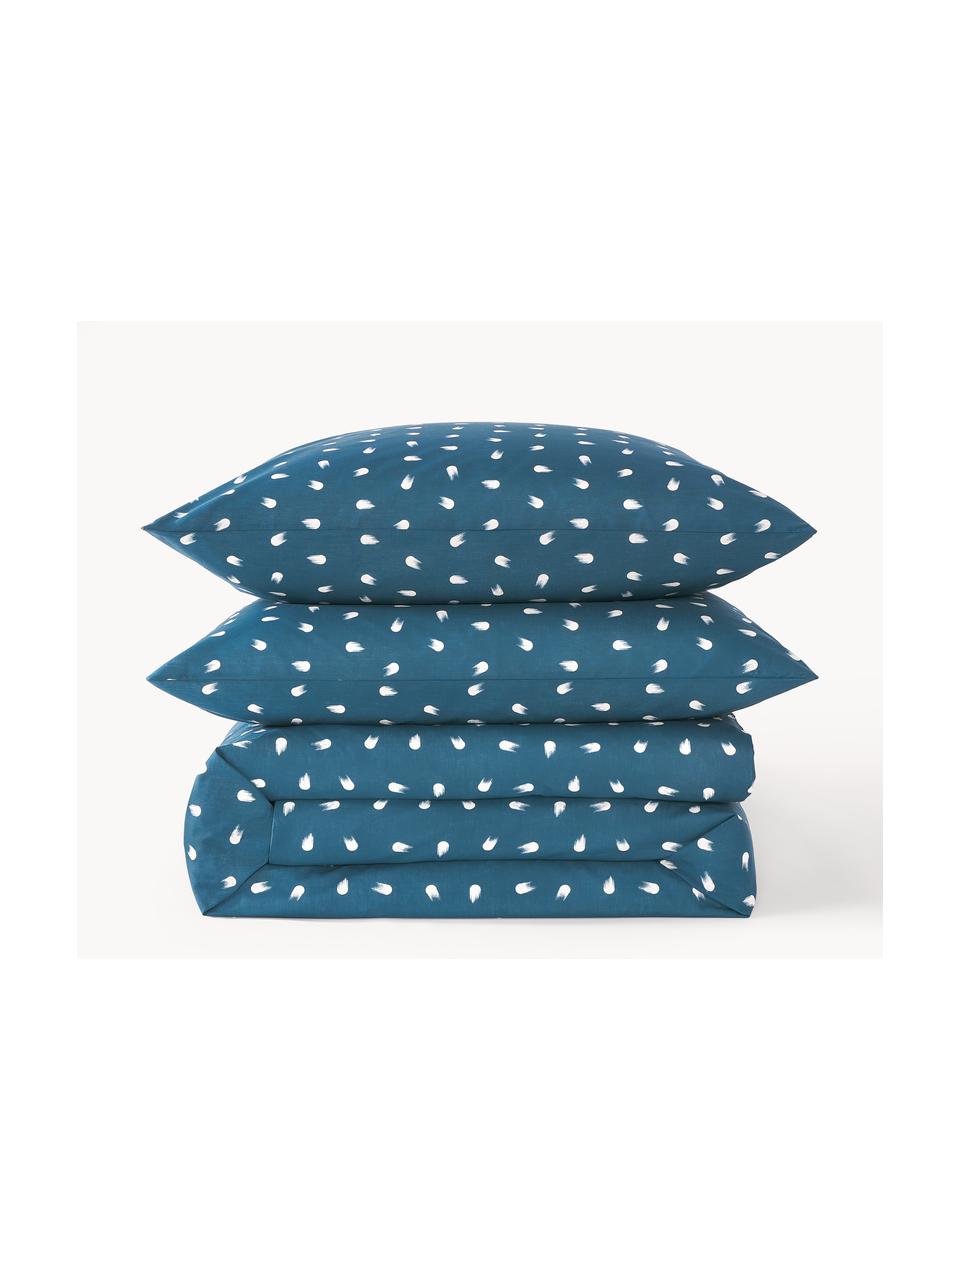 Baumwoll-Bettdeckenbezug Amma mit Tupfen-Muster, Webart: Renforcé Fadendichte 144 , Graublau, B 135 x L 200 cm